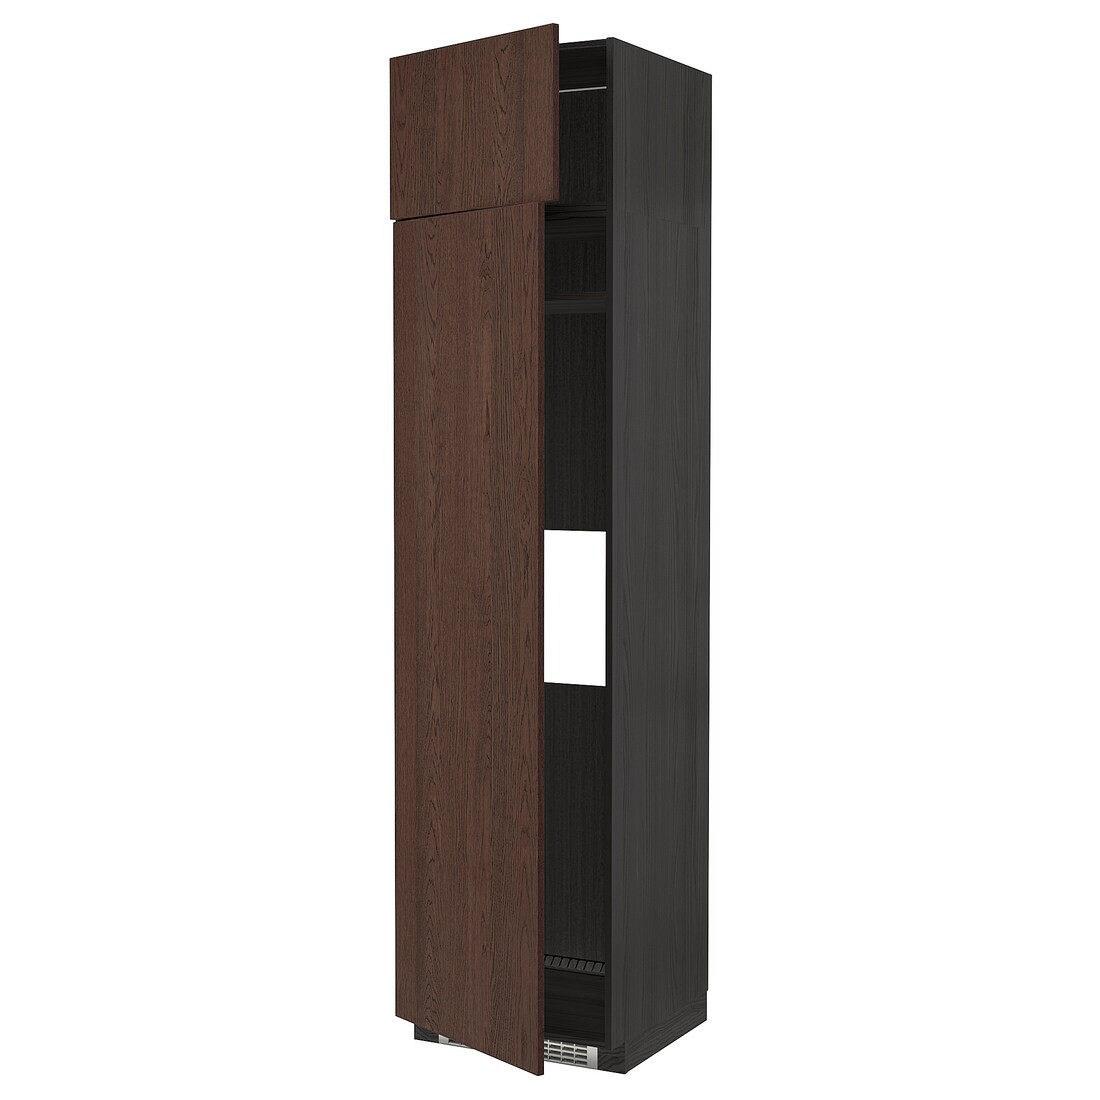 METOD МЕТОД Высокий шкаф для холодильника / морозильника, черный / Sinarp коричневый, 60x60x240 см